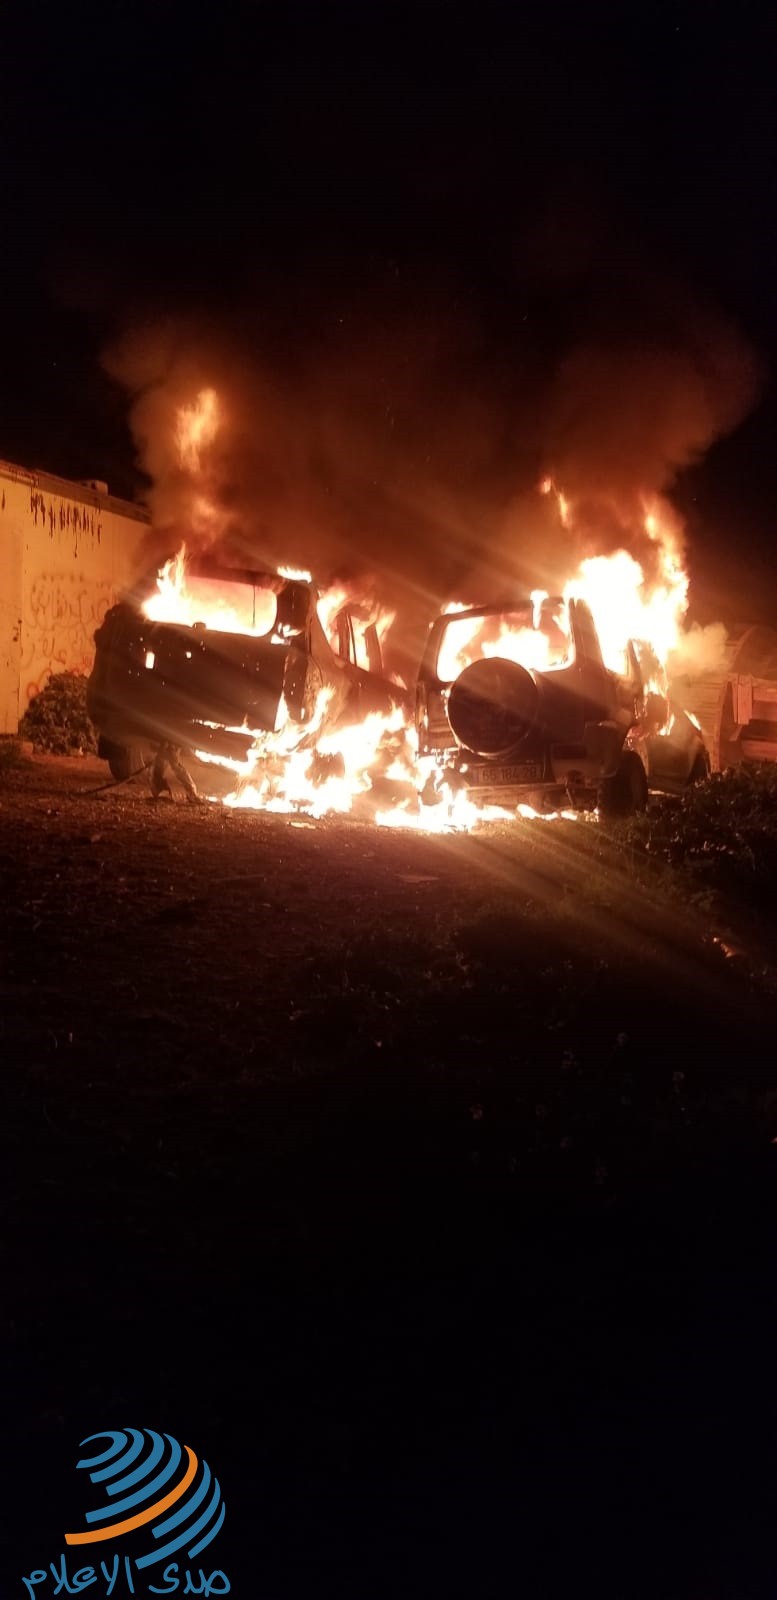 القدس: مستوطنون يحرقون سيارتين ويخطون شعارات عنصرية في بيت إكسا